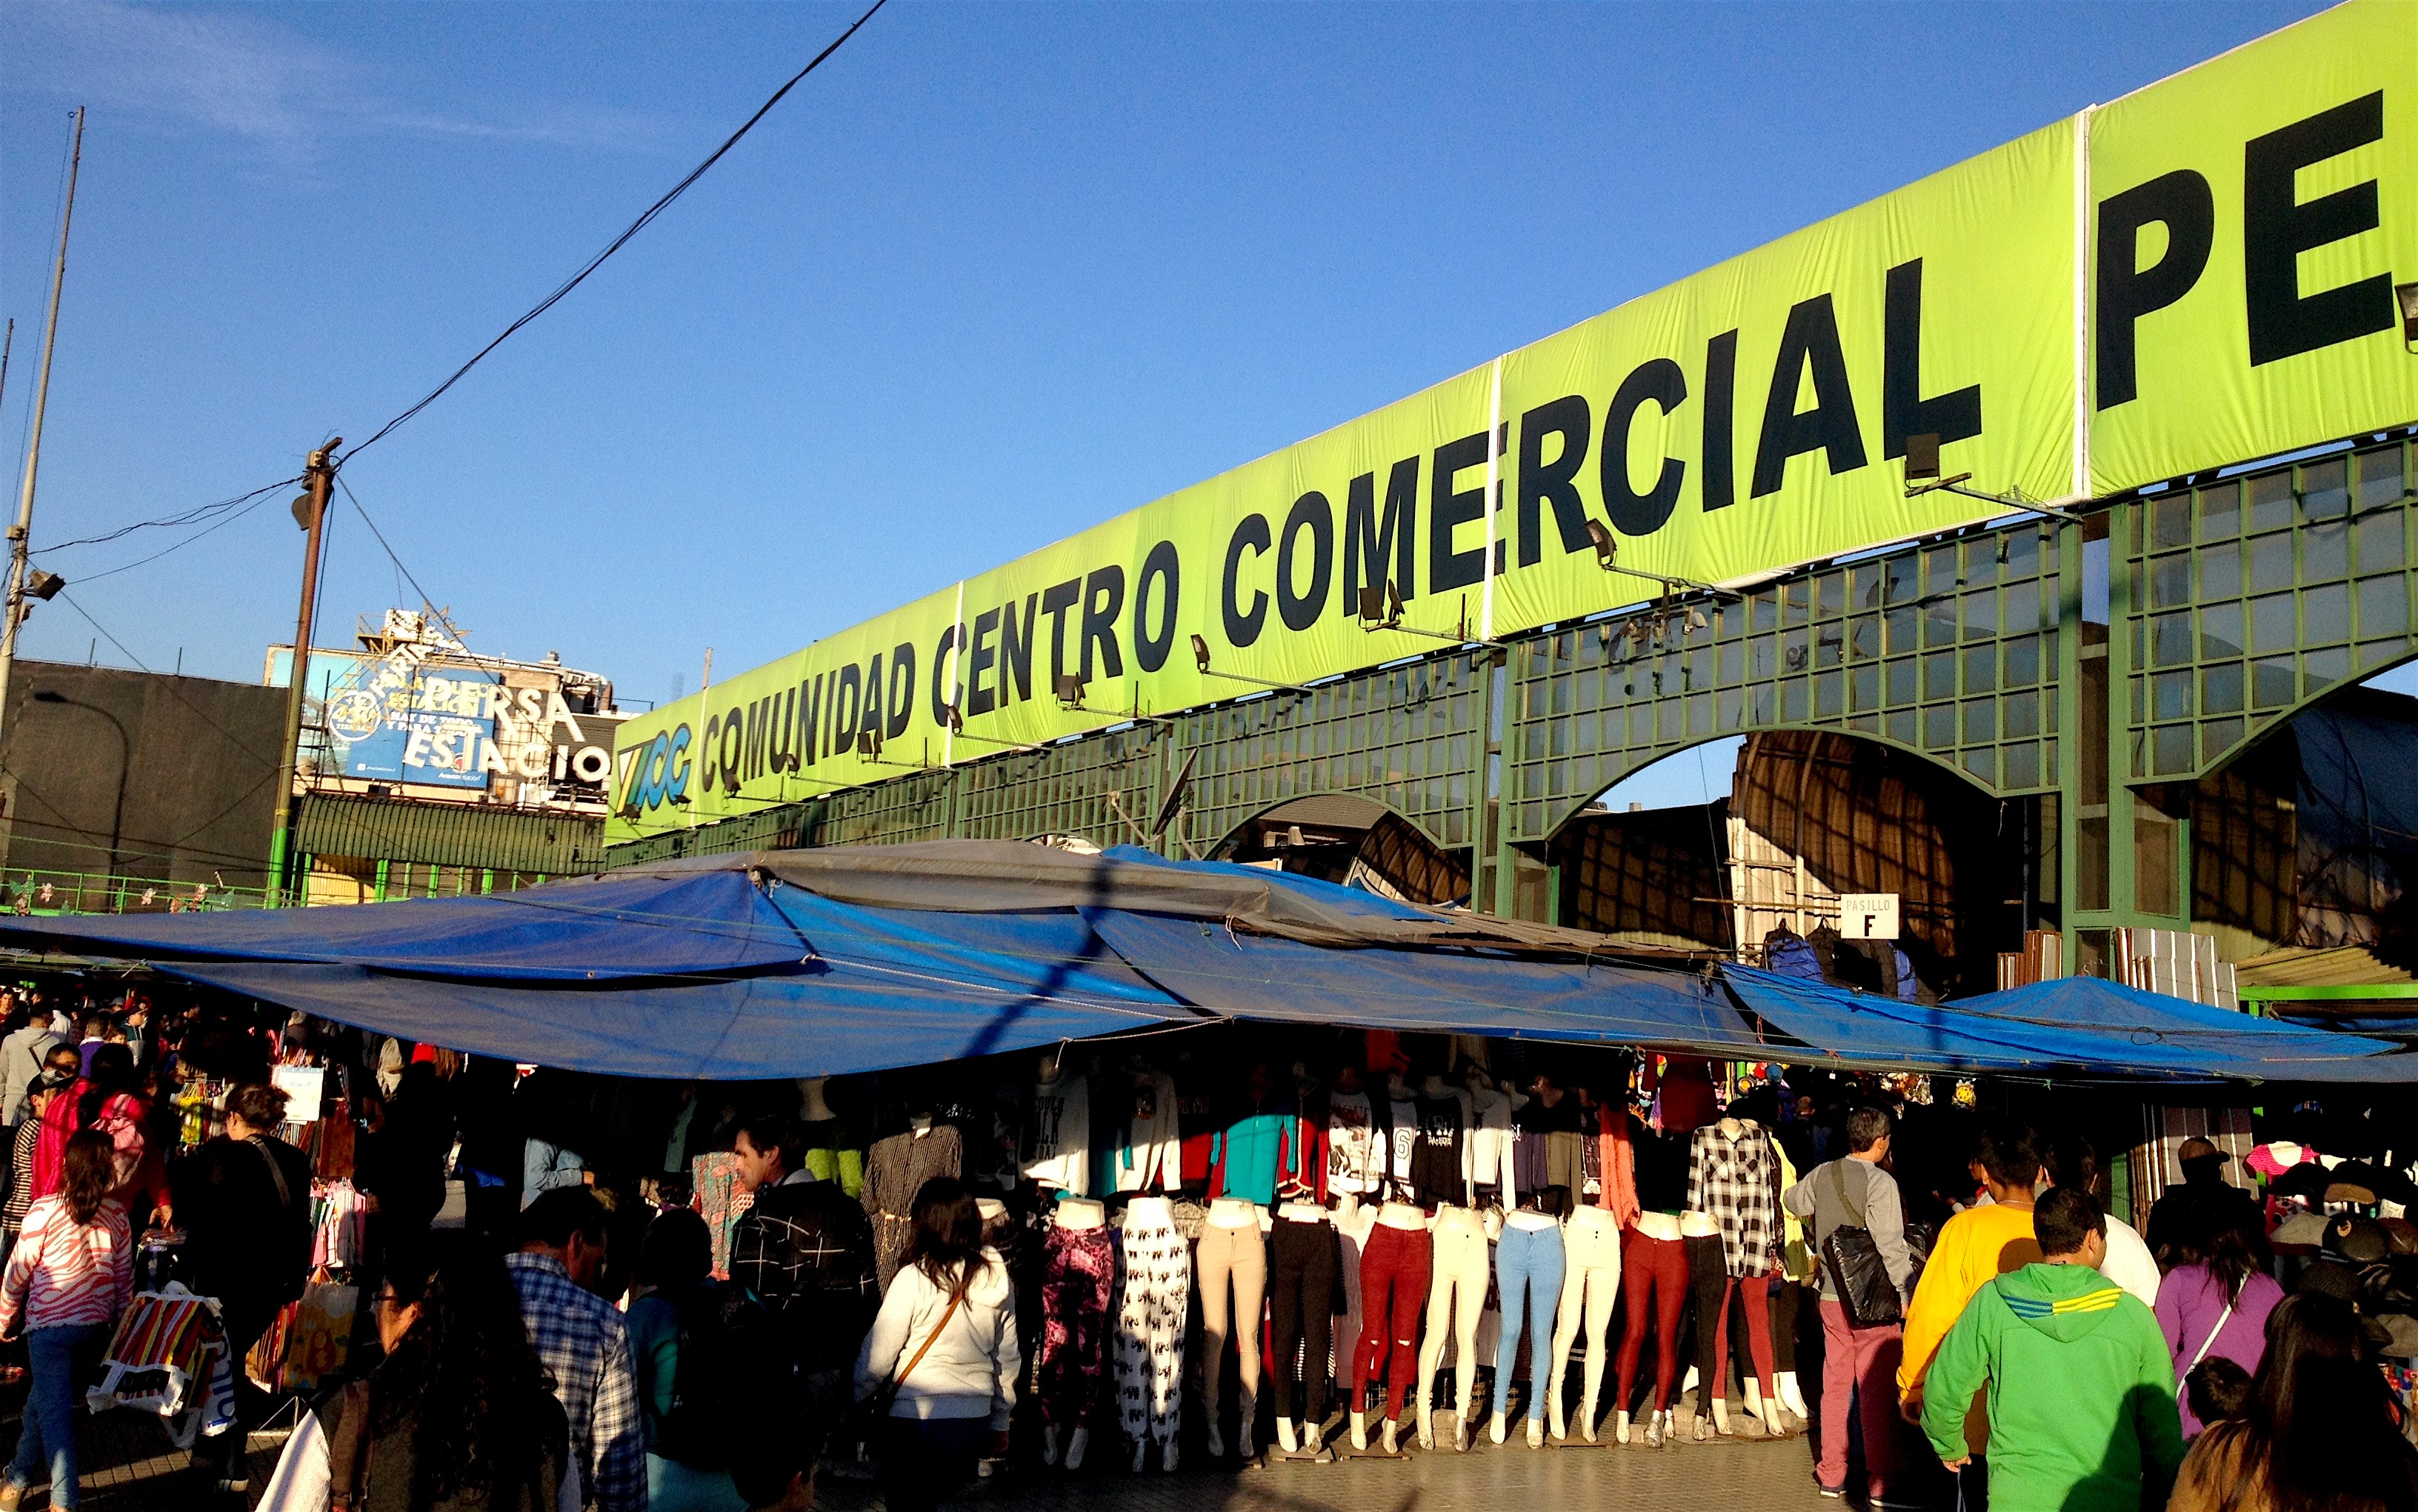 The big open air mall or Comunidad Centro Comercial. photo: snowbrains